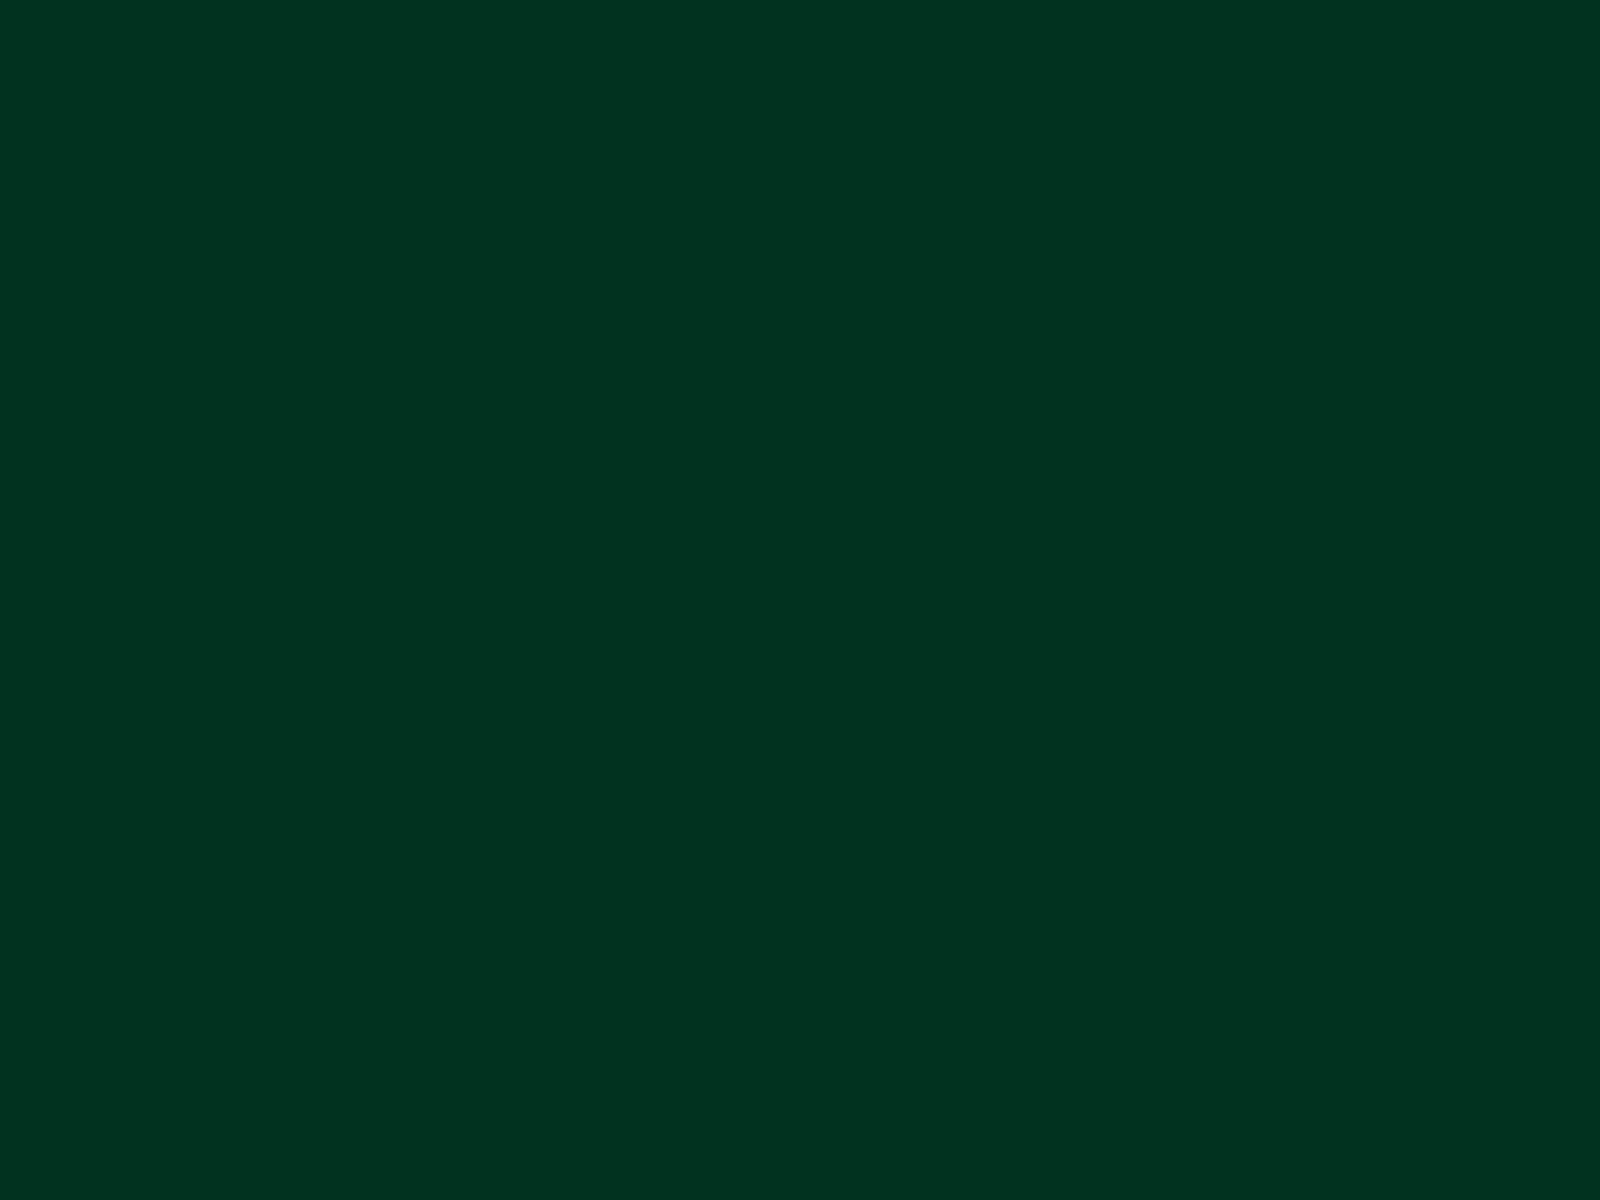 Dark Green Wallpapers - Top Những Hình Ảnh Đẹp